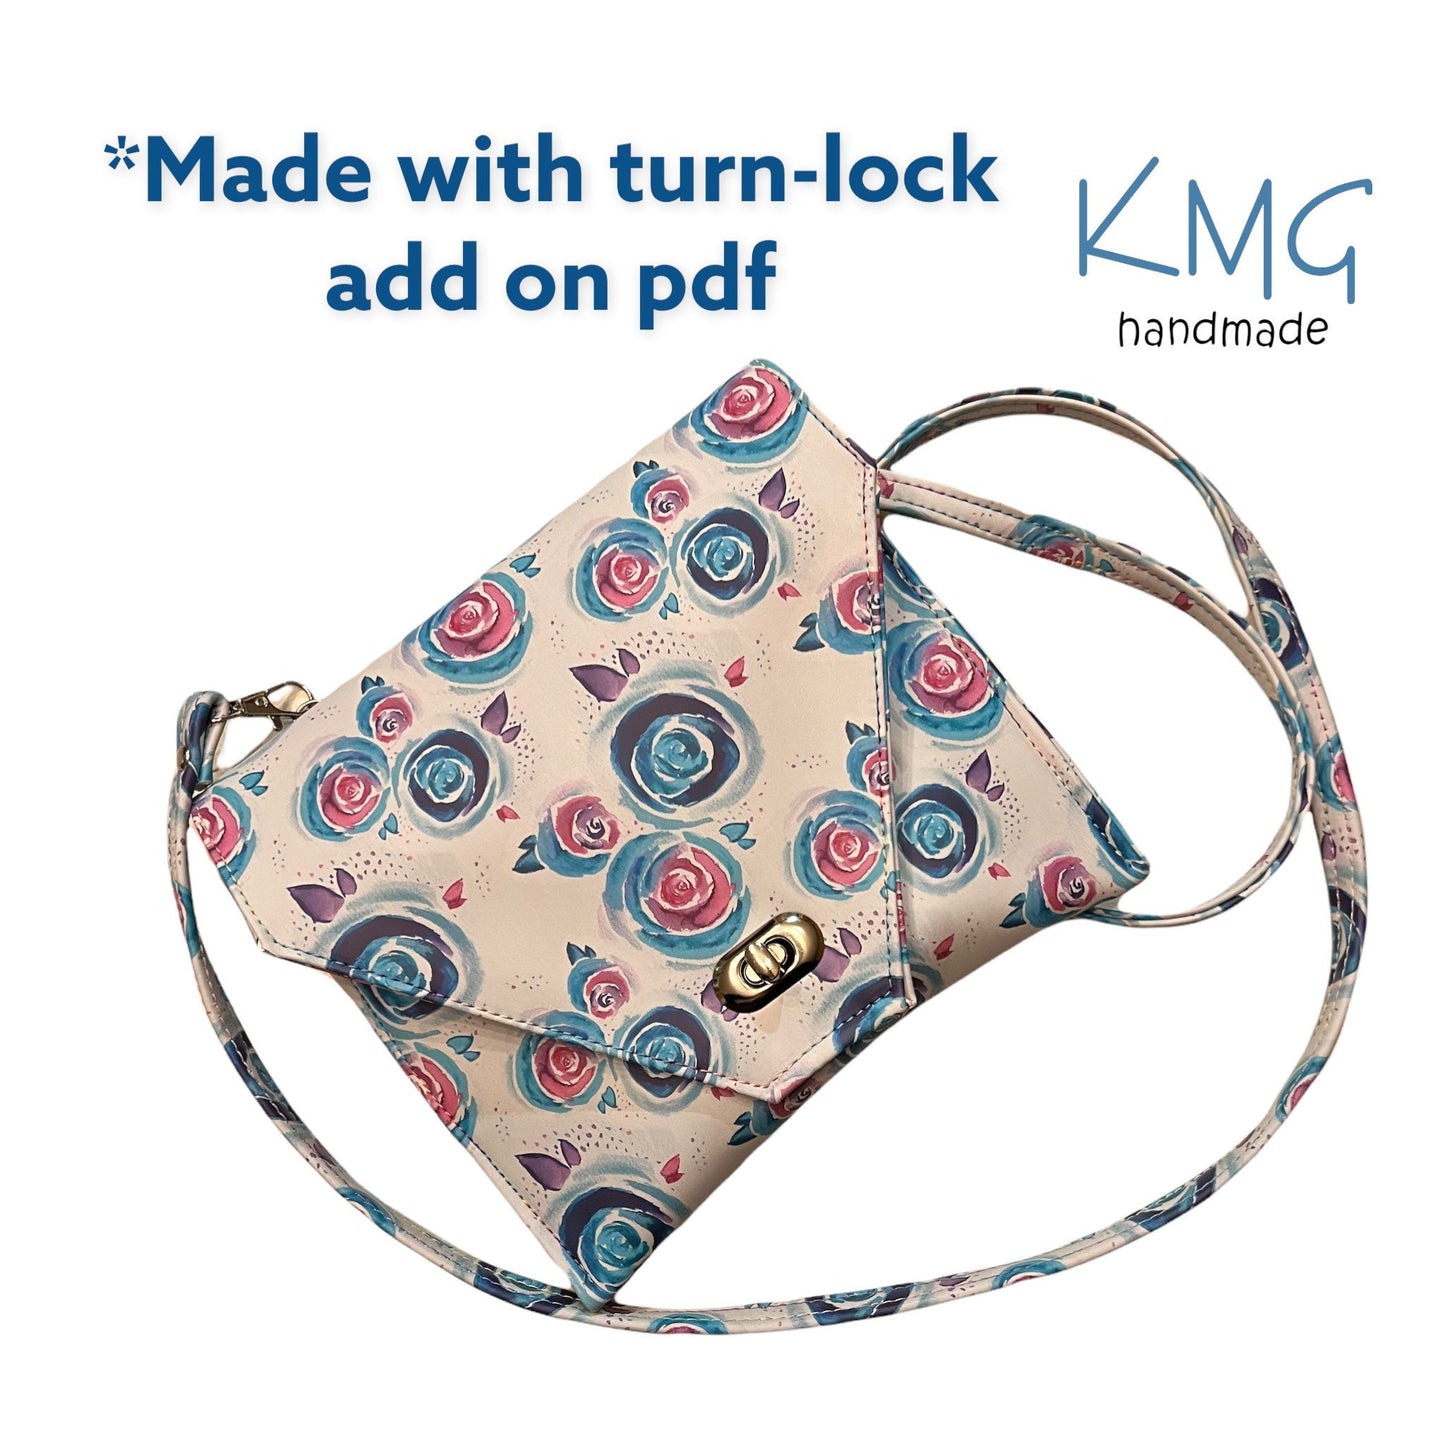 FREE PDF Pattern and Video Tutorial - Aura Envelope Bag by KMGhandmade